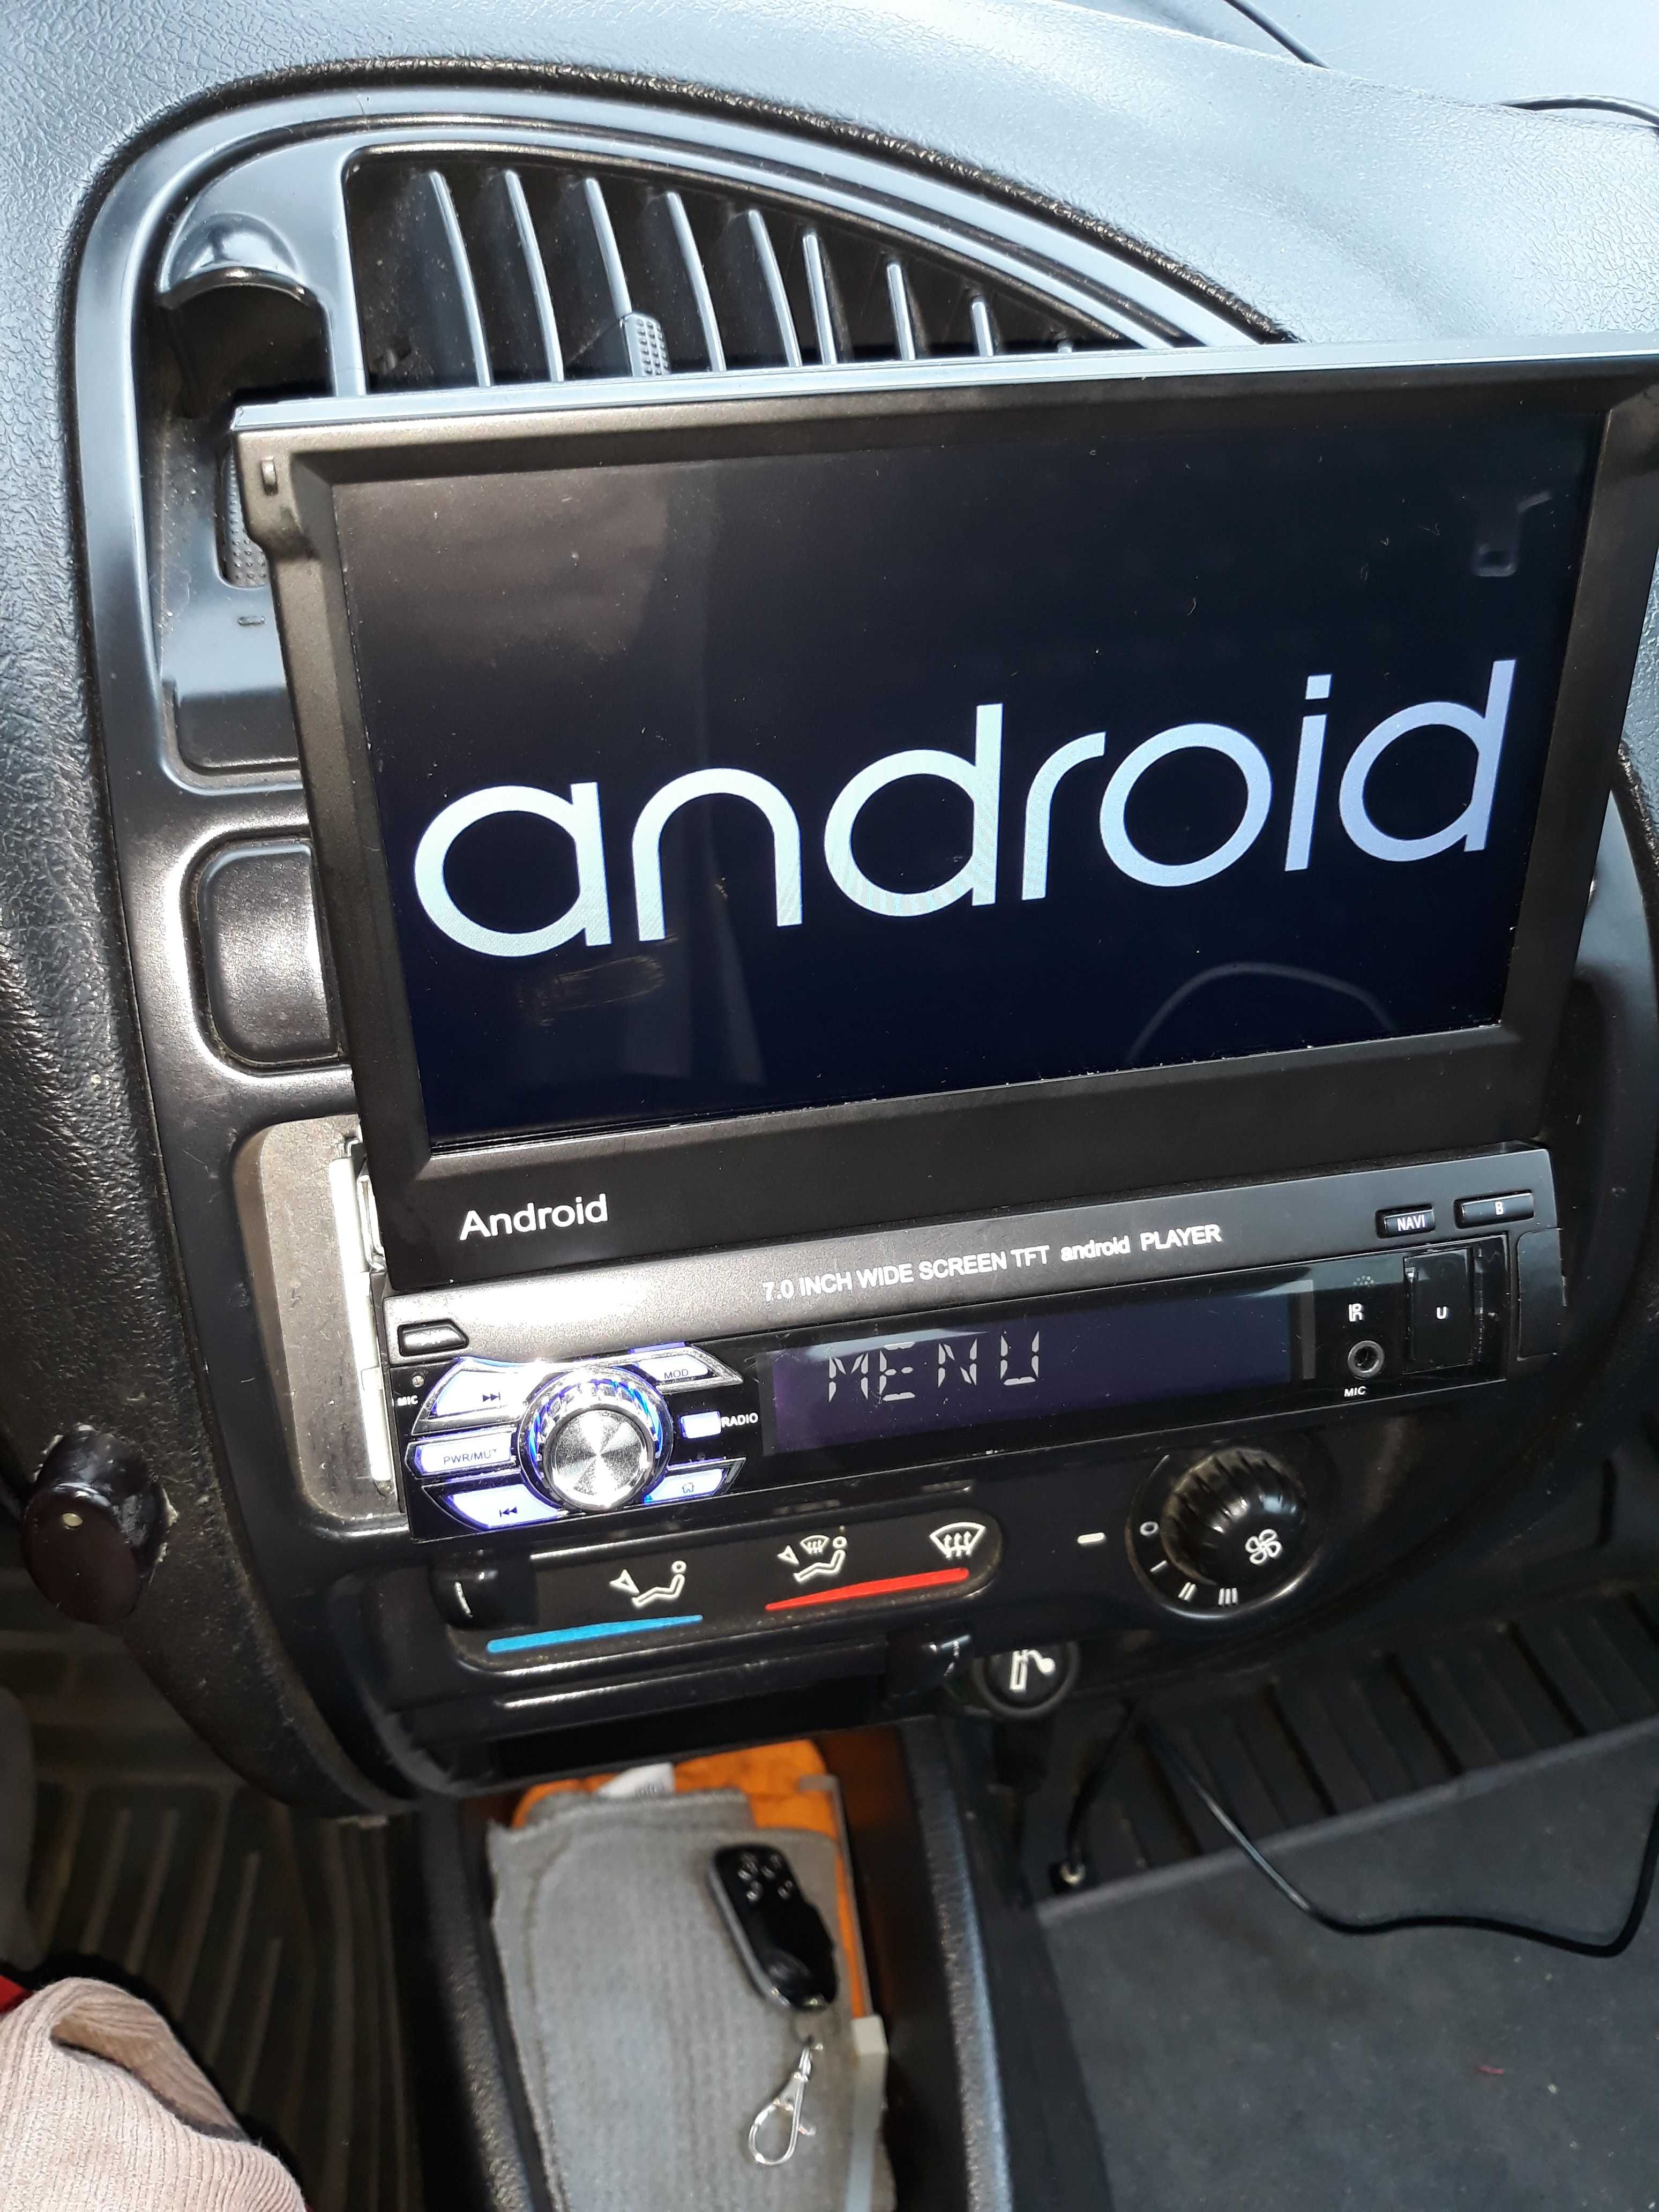 rádio android como novo só visto